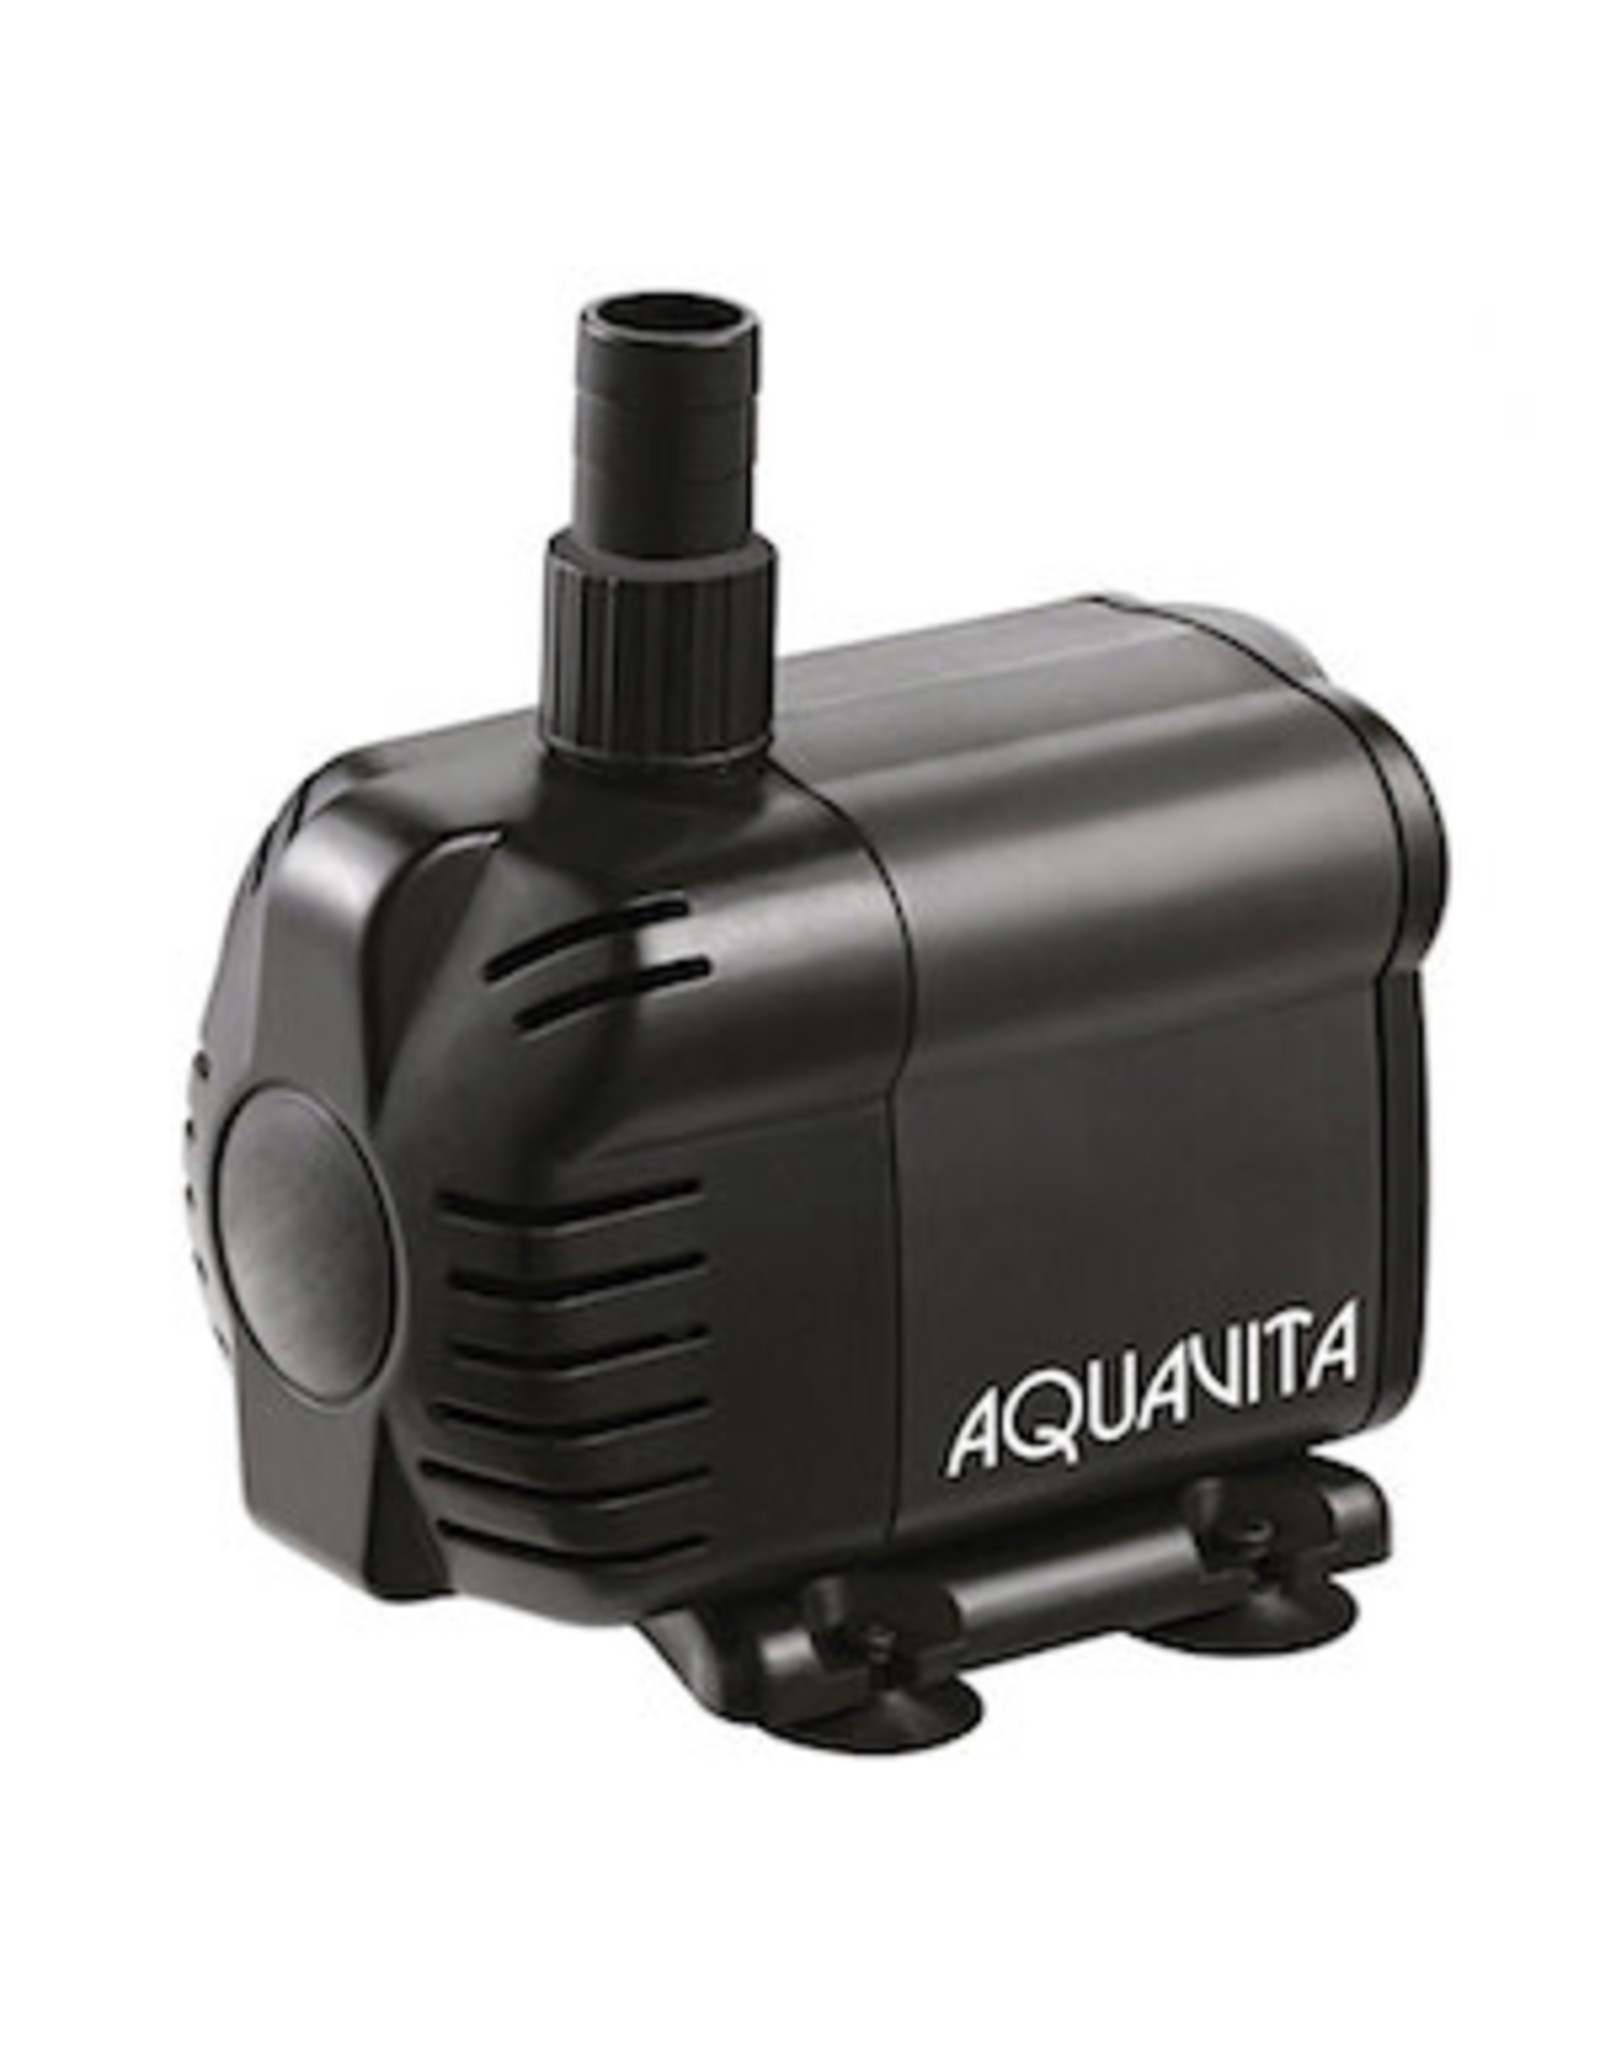 Aqua Vita AquaVita 528 Water Pump